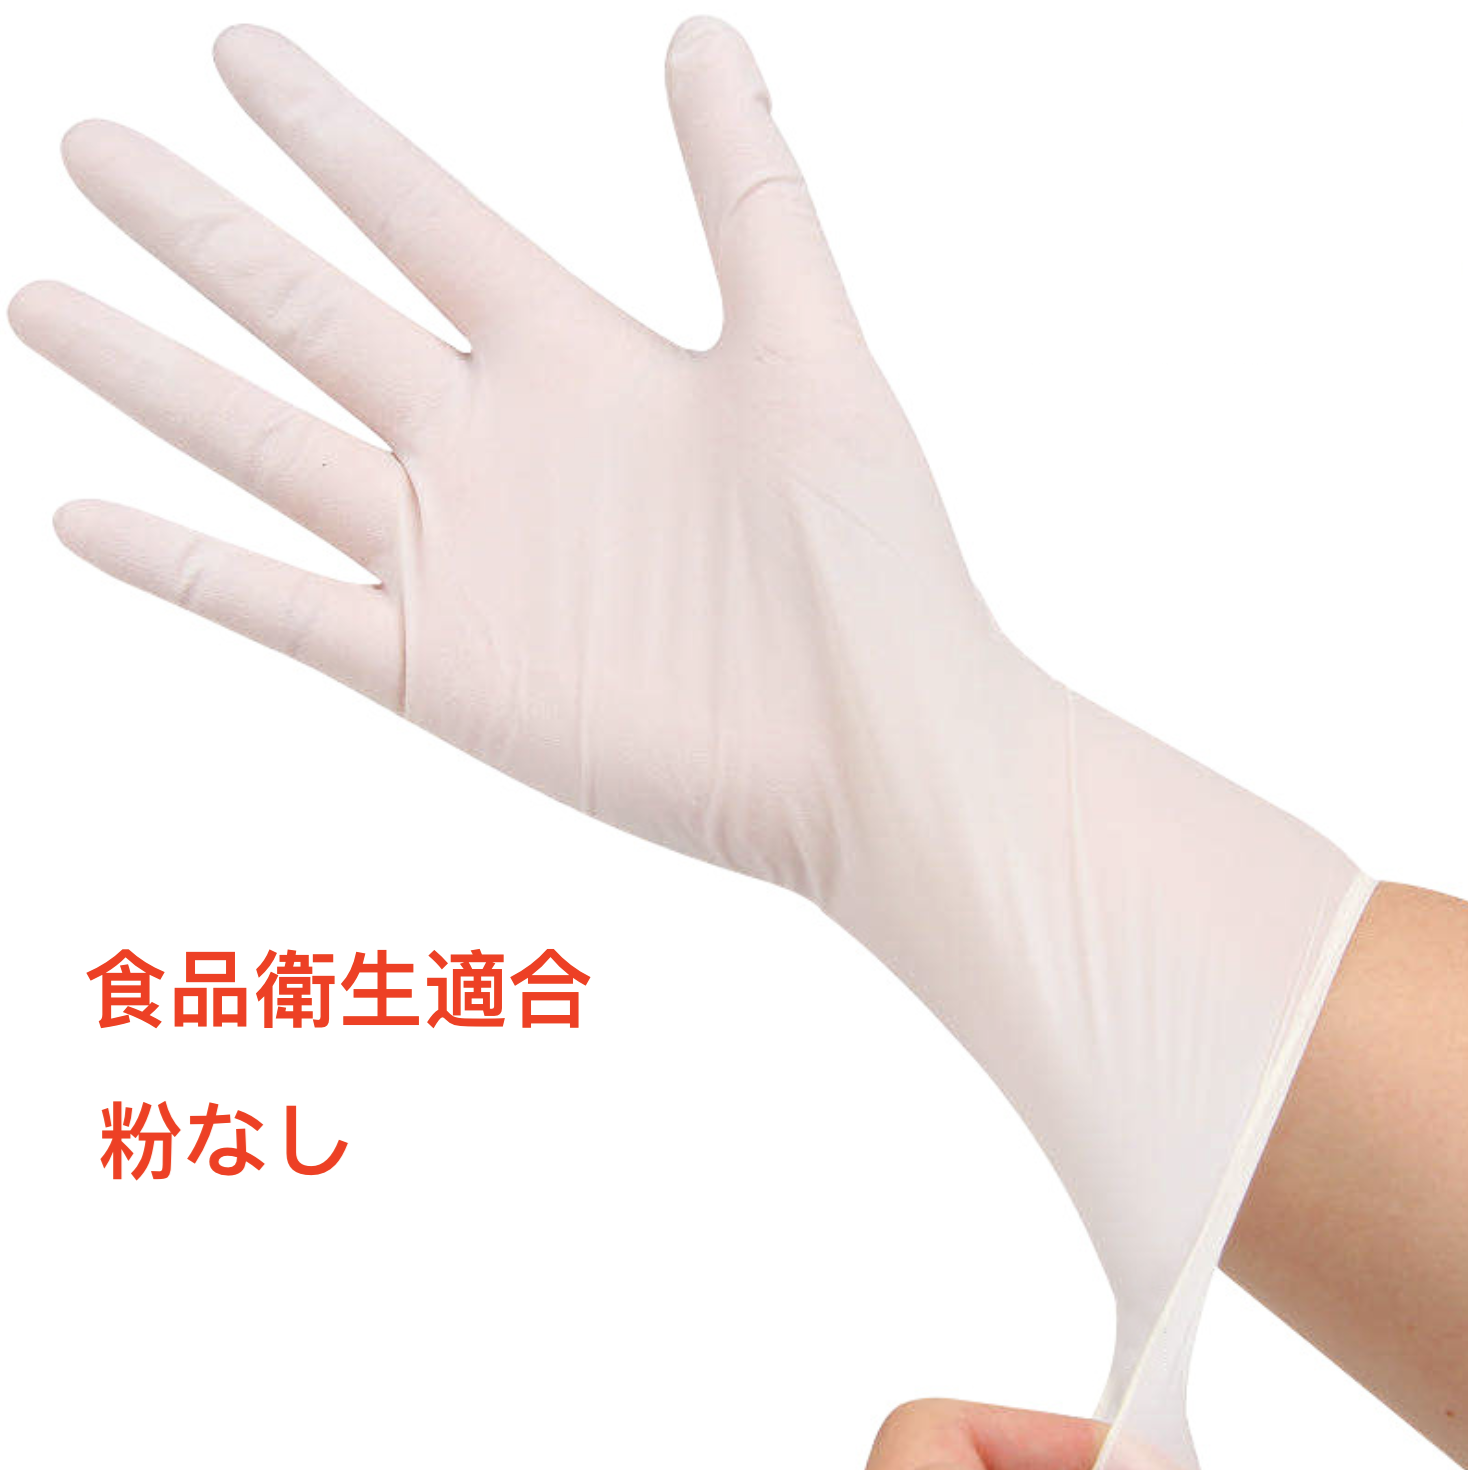 【100枚】IIMONO 使い捨てニトリル手袋(S/M/Lサイズ) ホワイト1箱550円